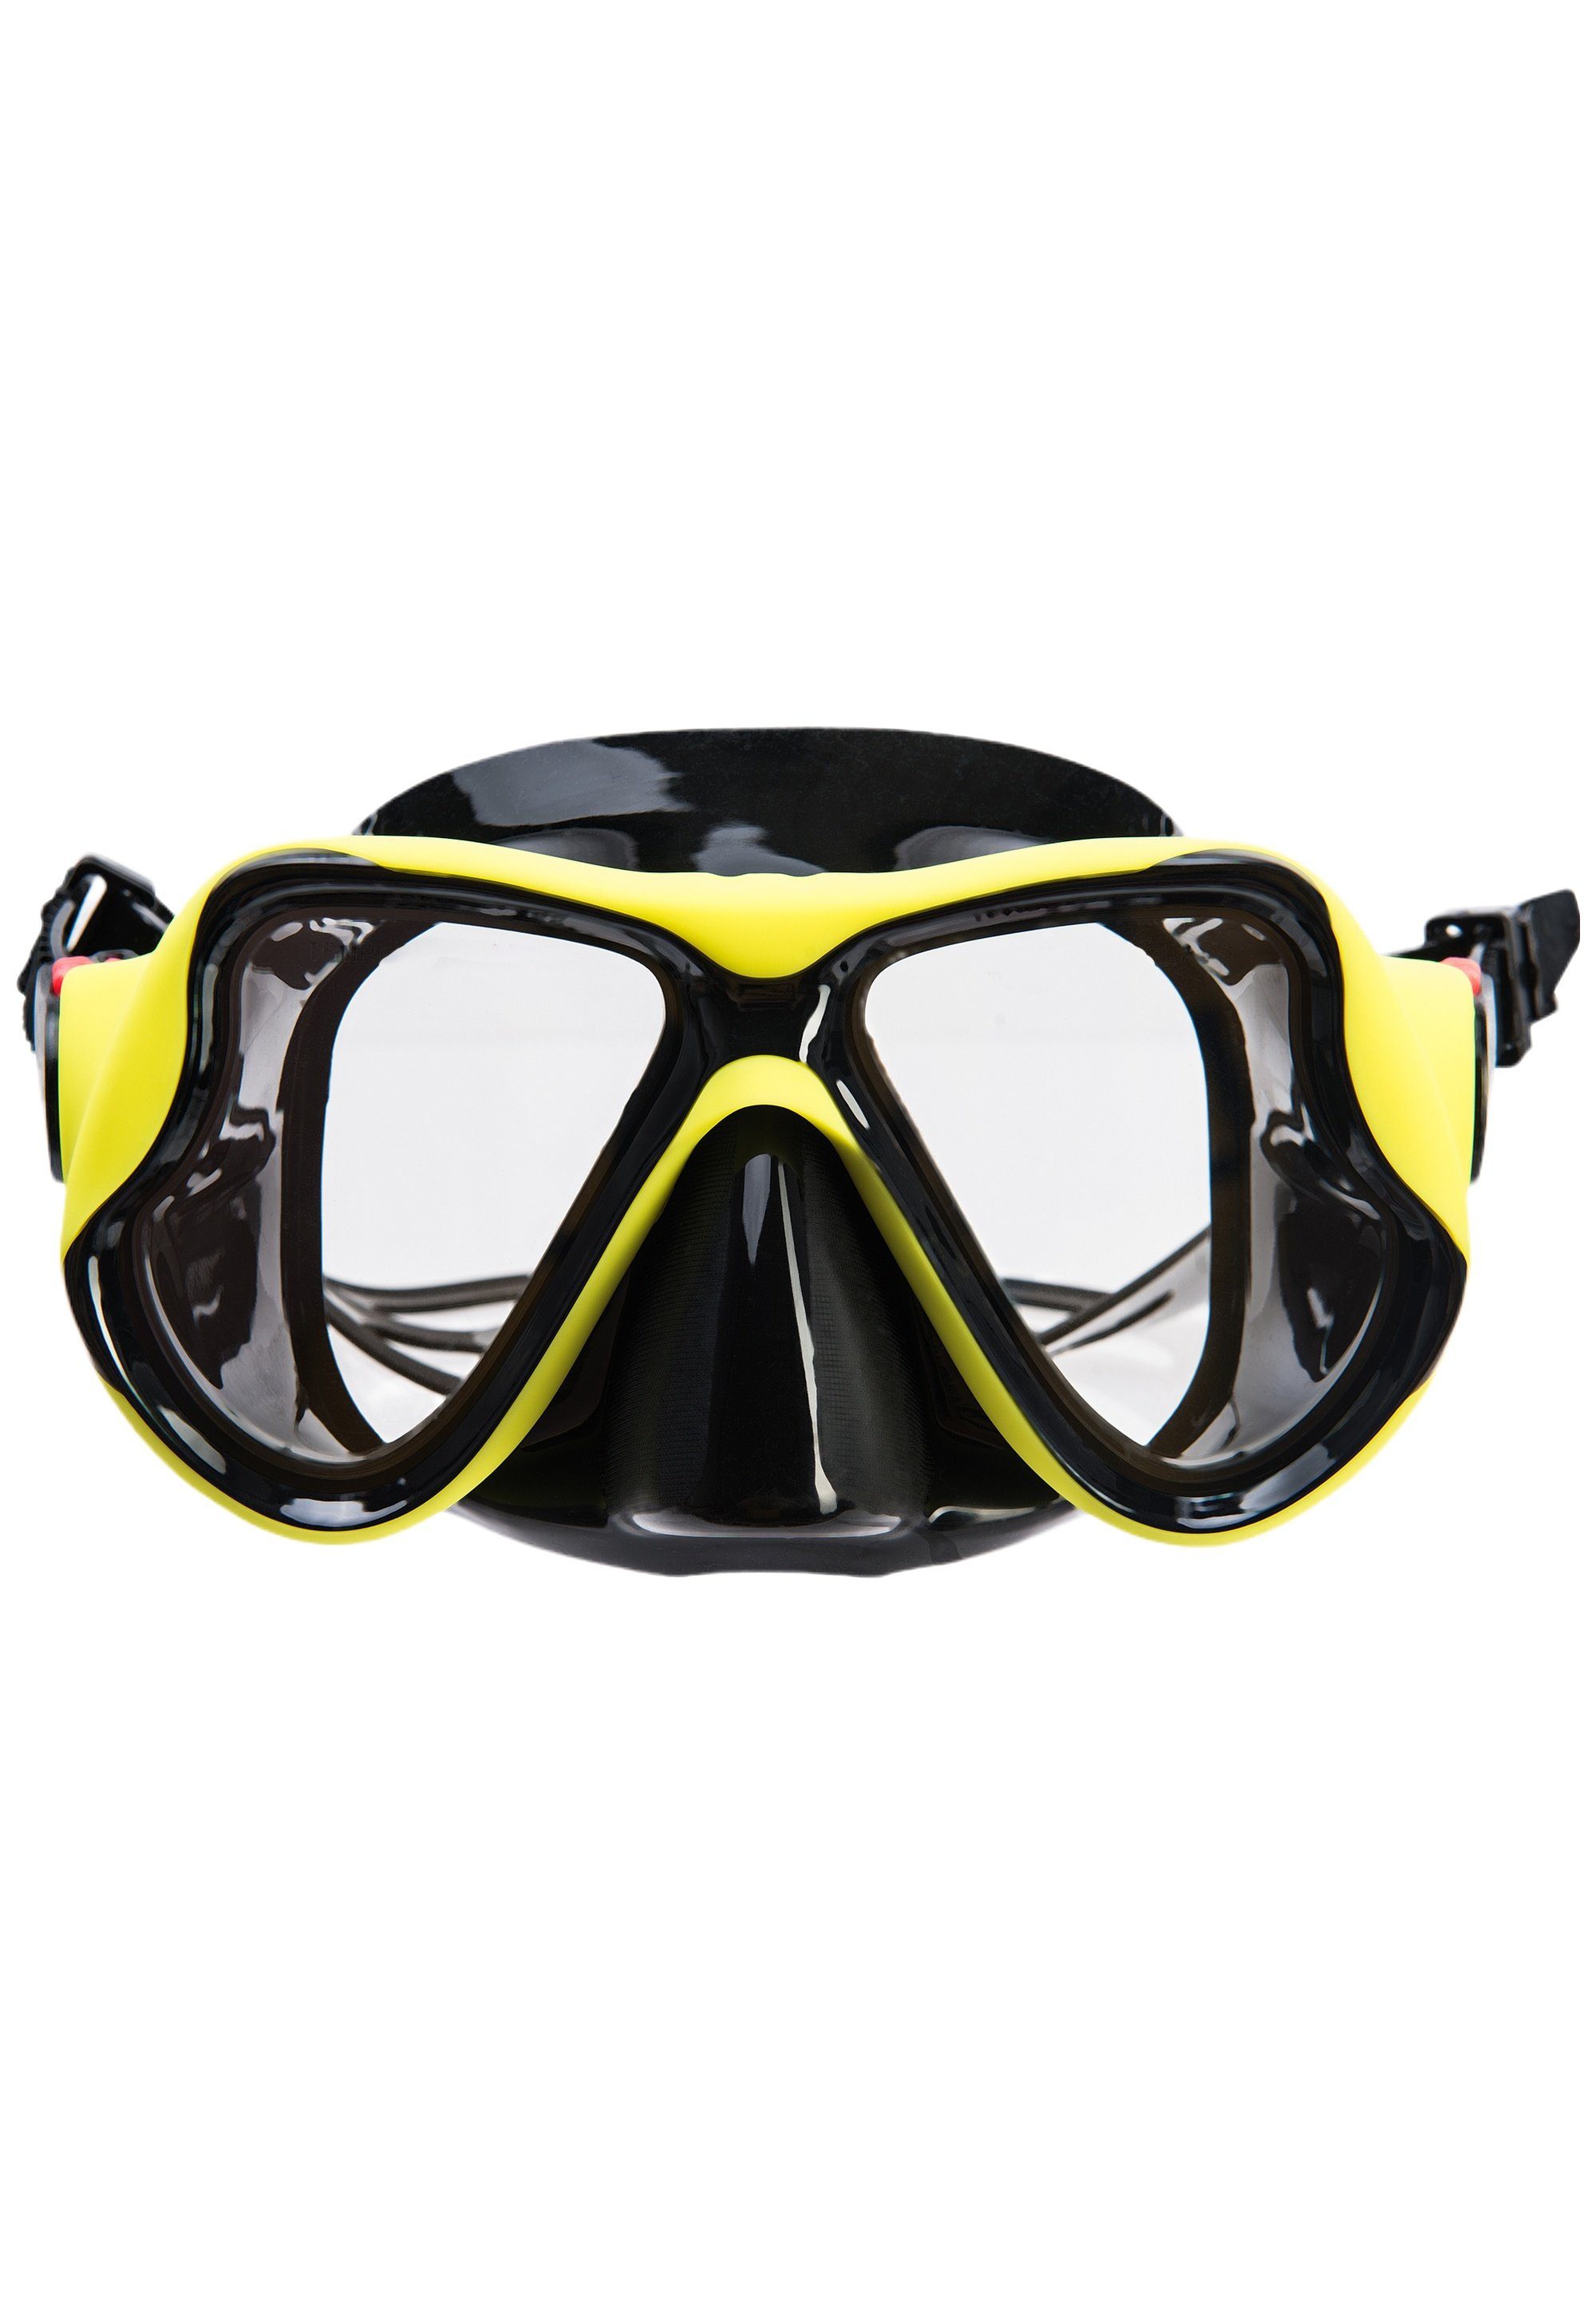 einstellbarem Taucherbrille Great Riemen Barrier mit Reef, CRUZ